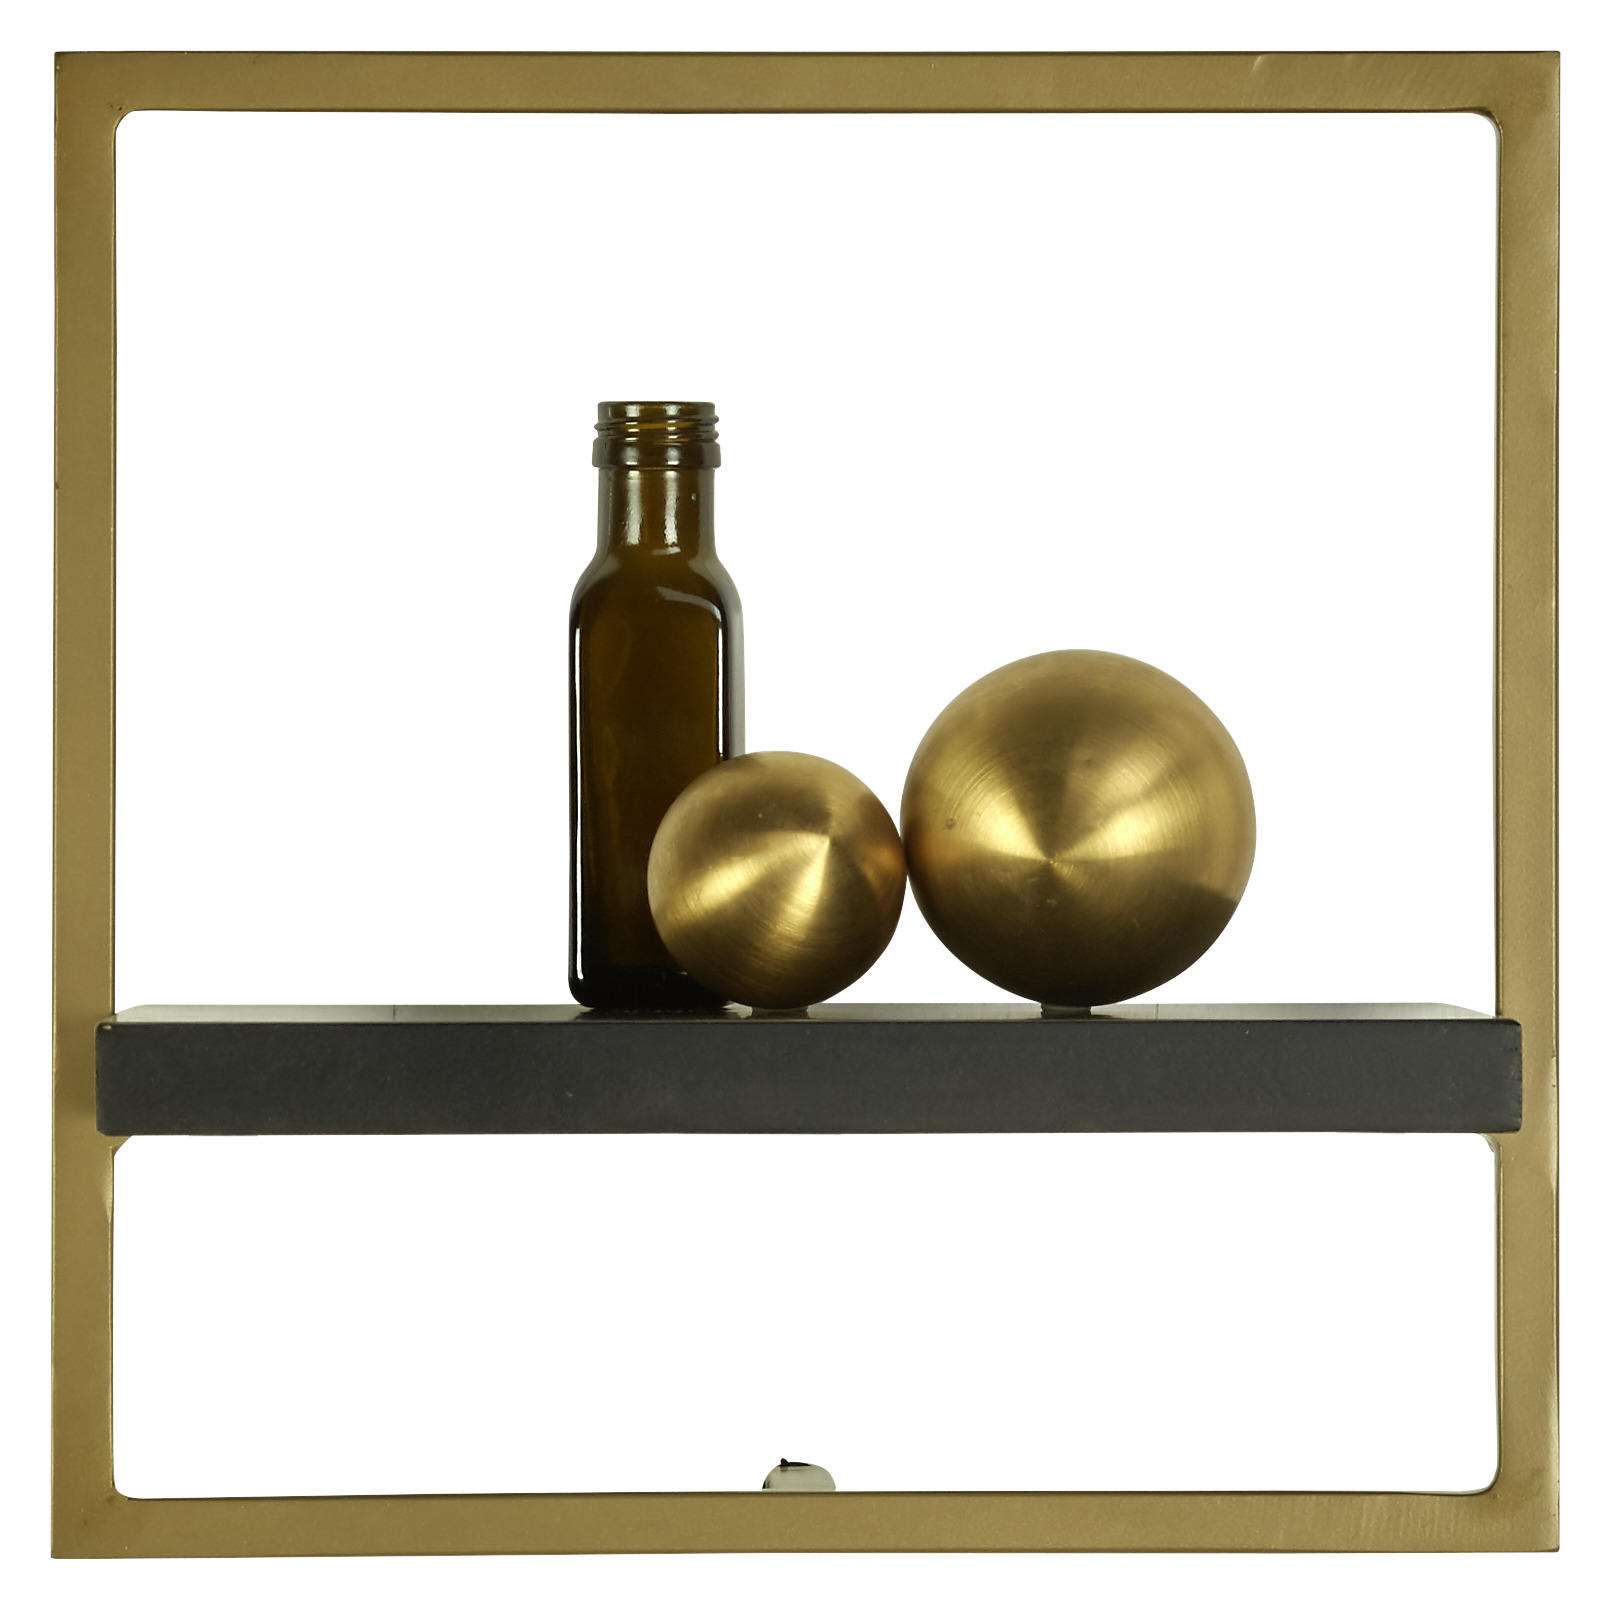 STENSKI REGAL 35/35/25 cm črna, zlata  - črna/zlata, Trend, kovina/les (35/35/25cm) - Carryhome